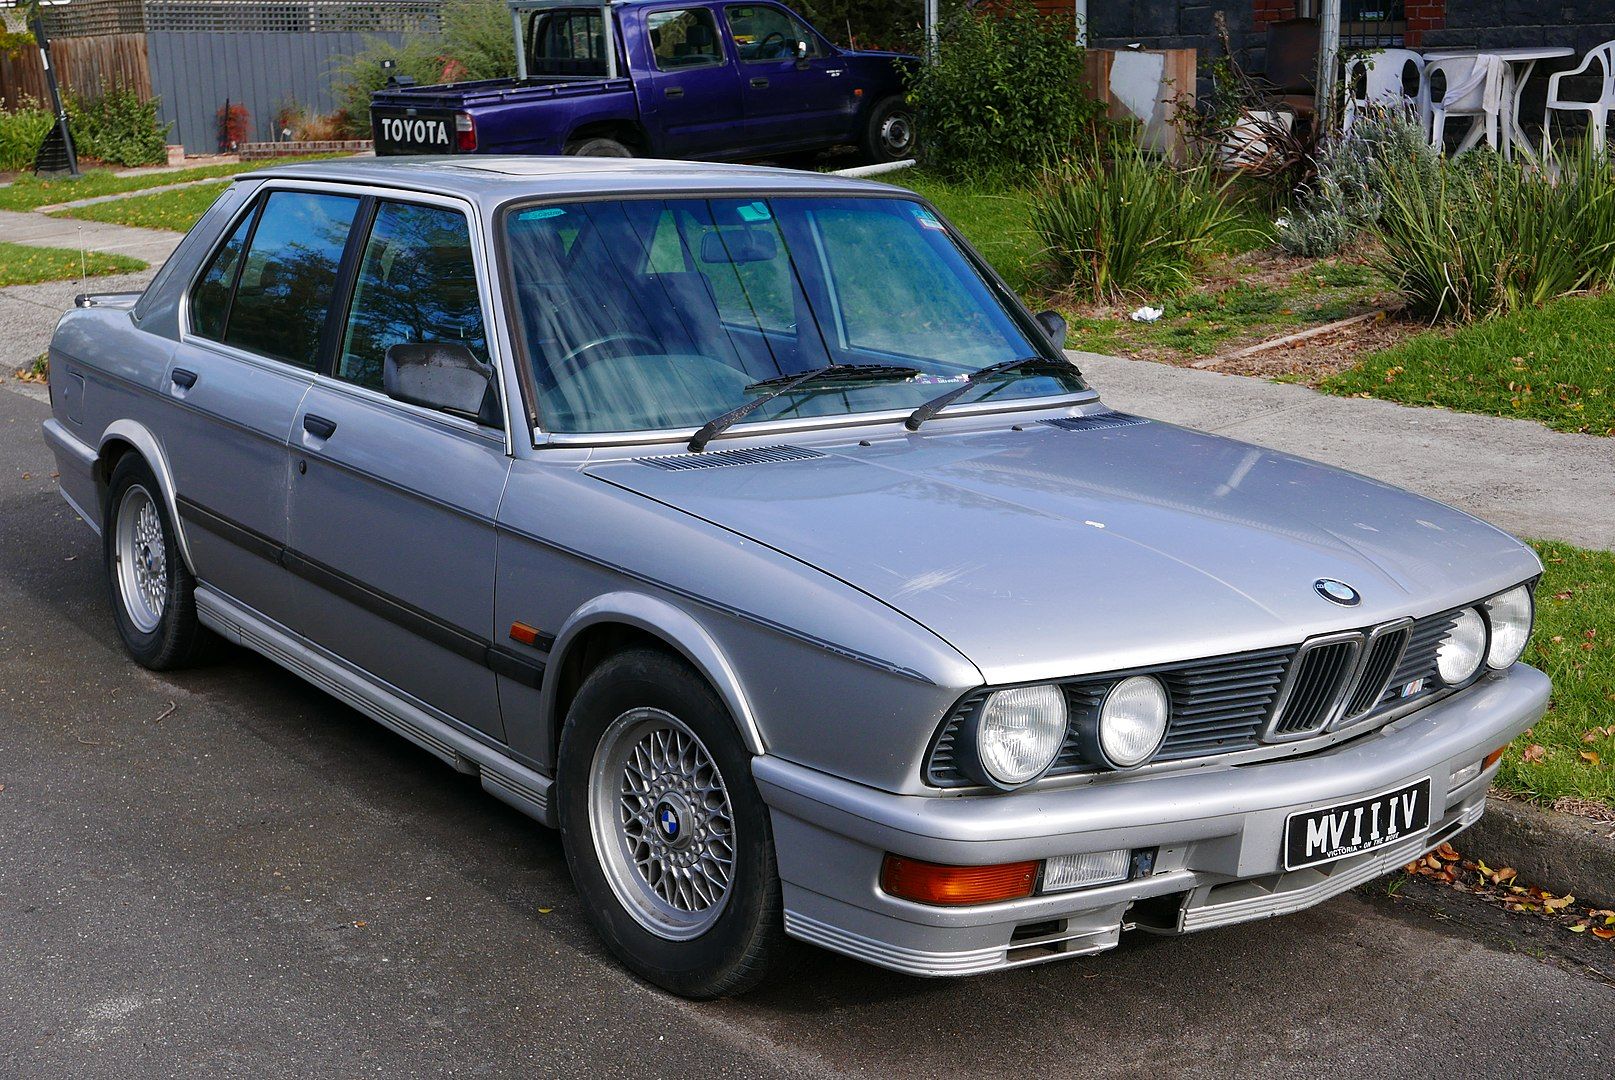 BMW E12 535i, silver